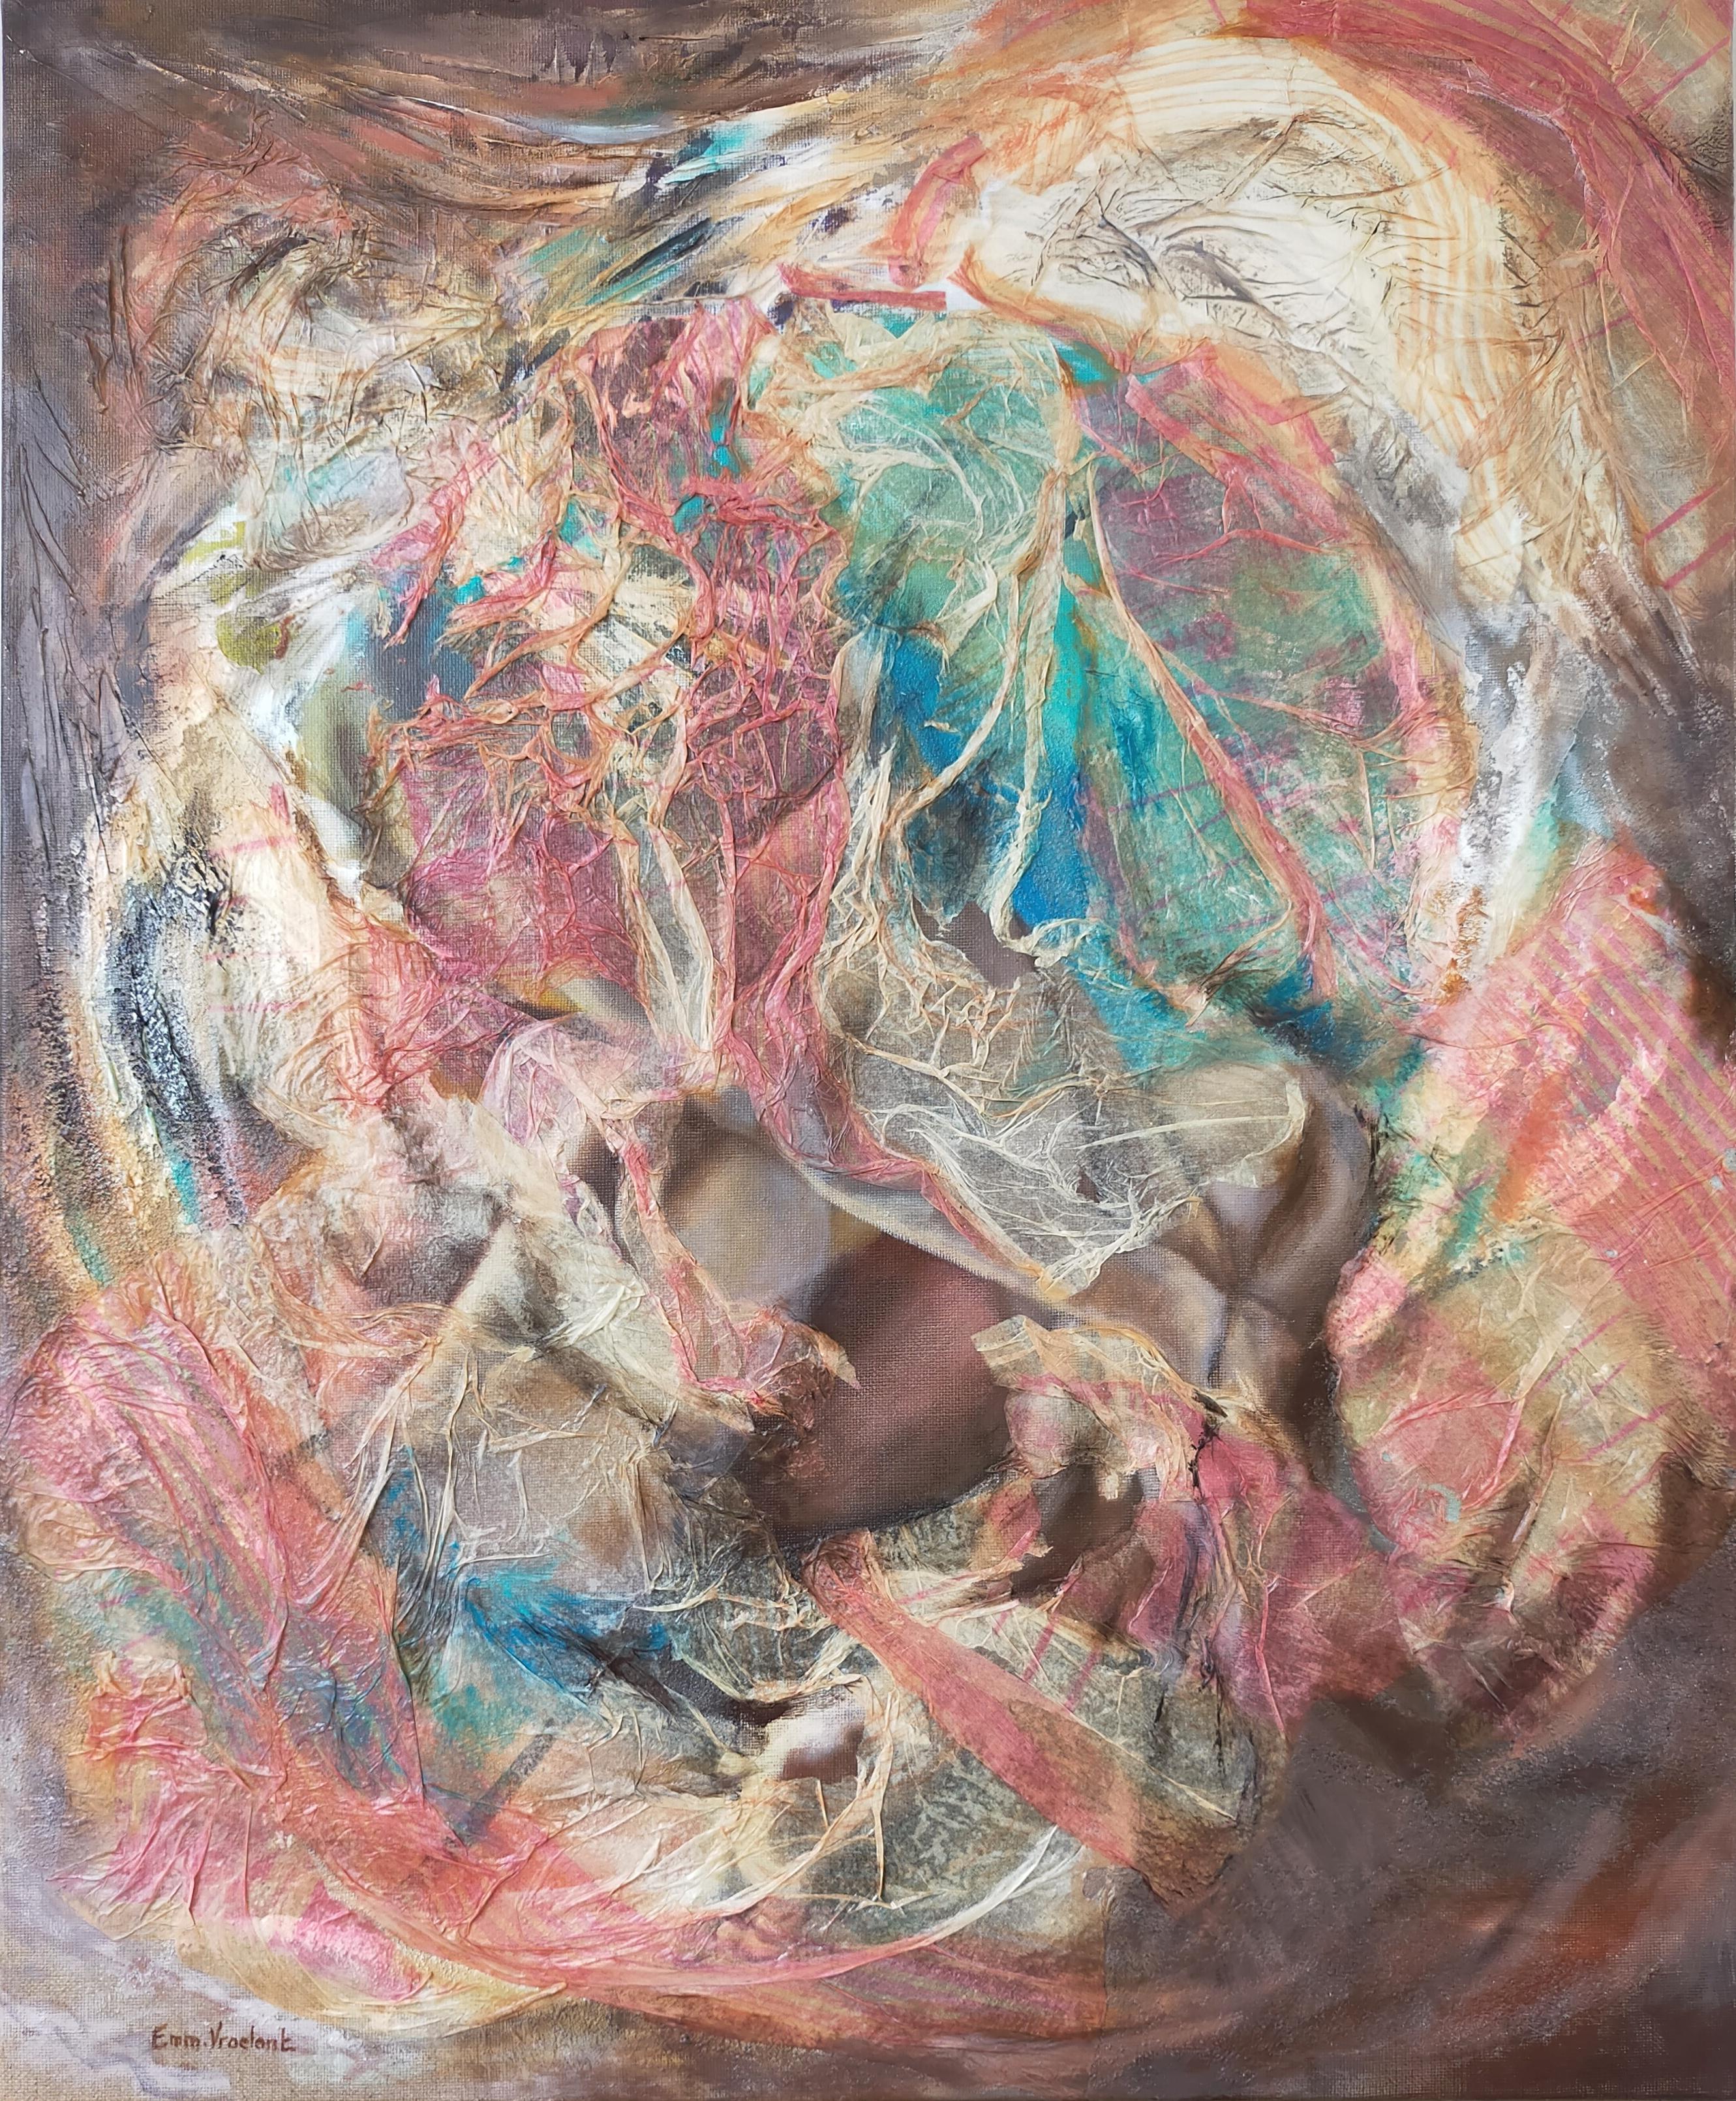 Abstract Painting Emmanuelle Vroelant - Peinture abstraite « Landfill » en toile de lin acrylique 73x60 cm couleur tsunami 